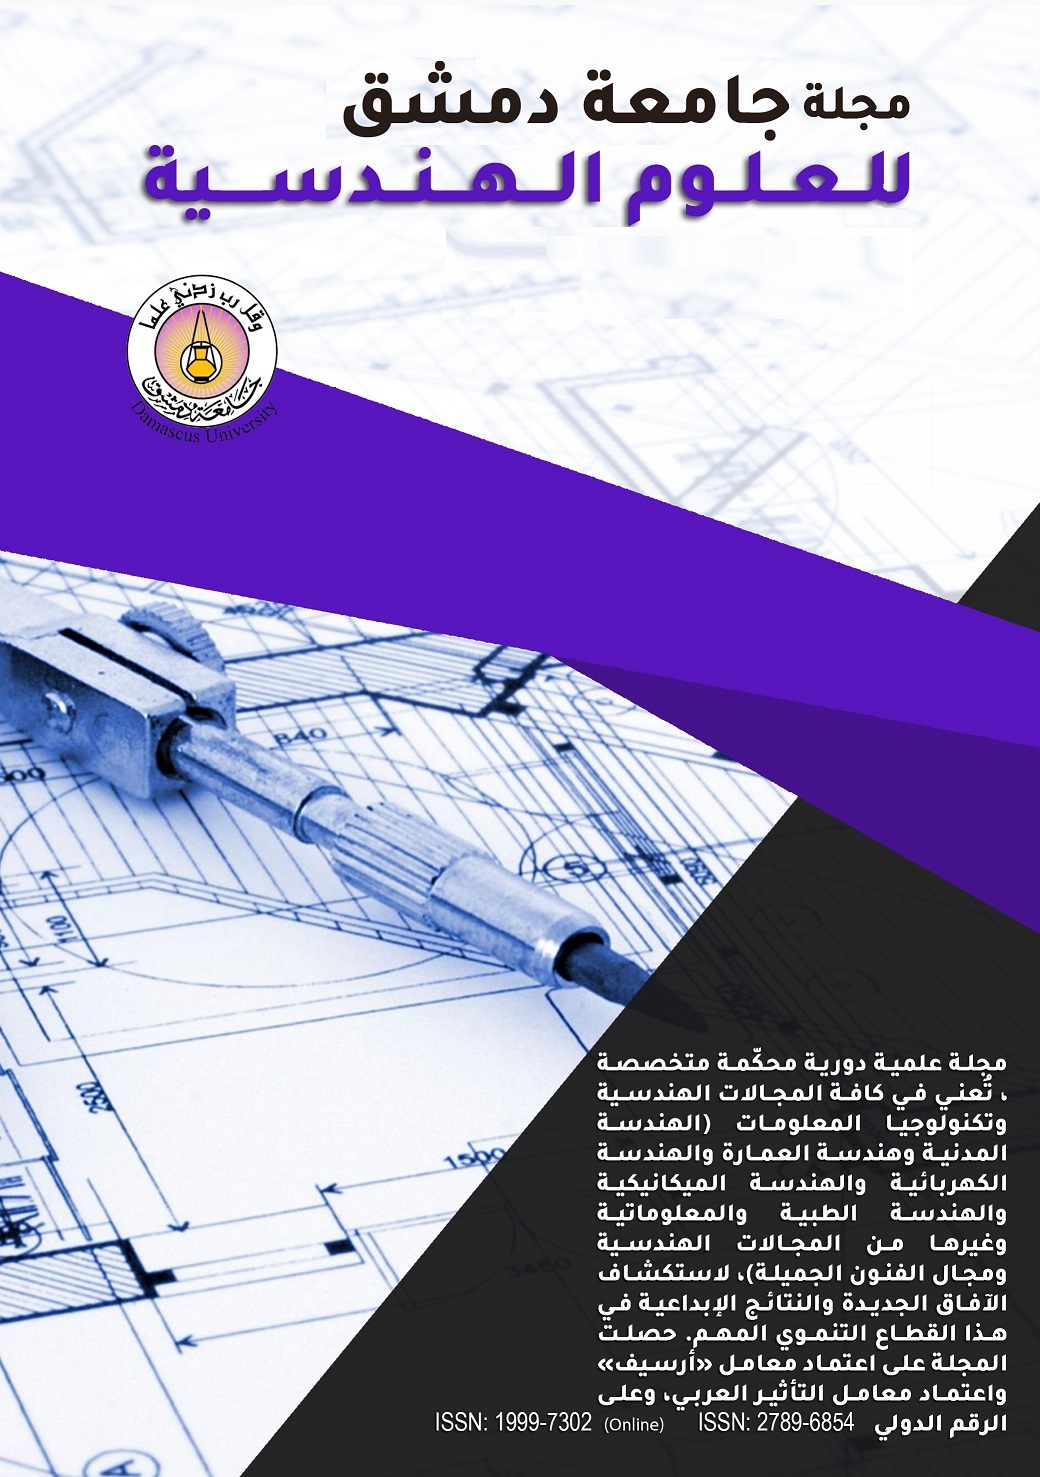 					معاينة مجلد 33 عدد 1 (2017): مجلة جامعة دمشق للعلوم الهندسية
				